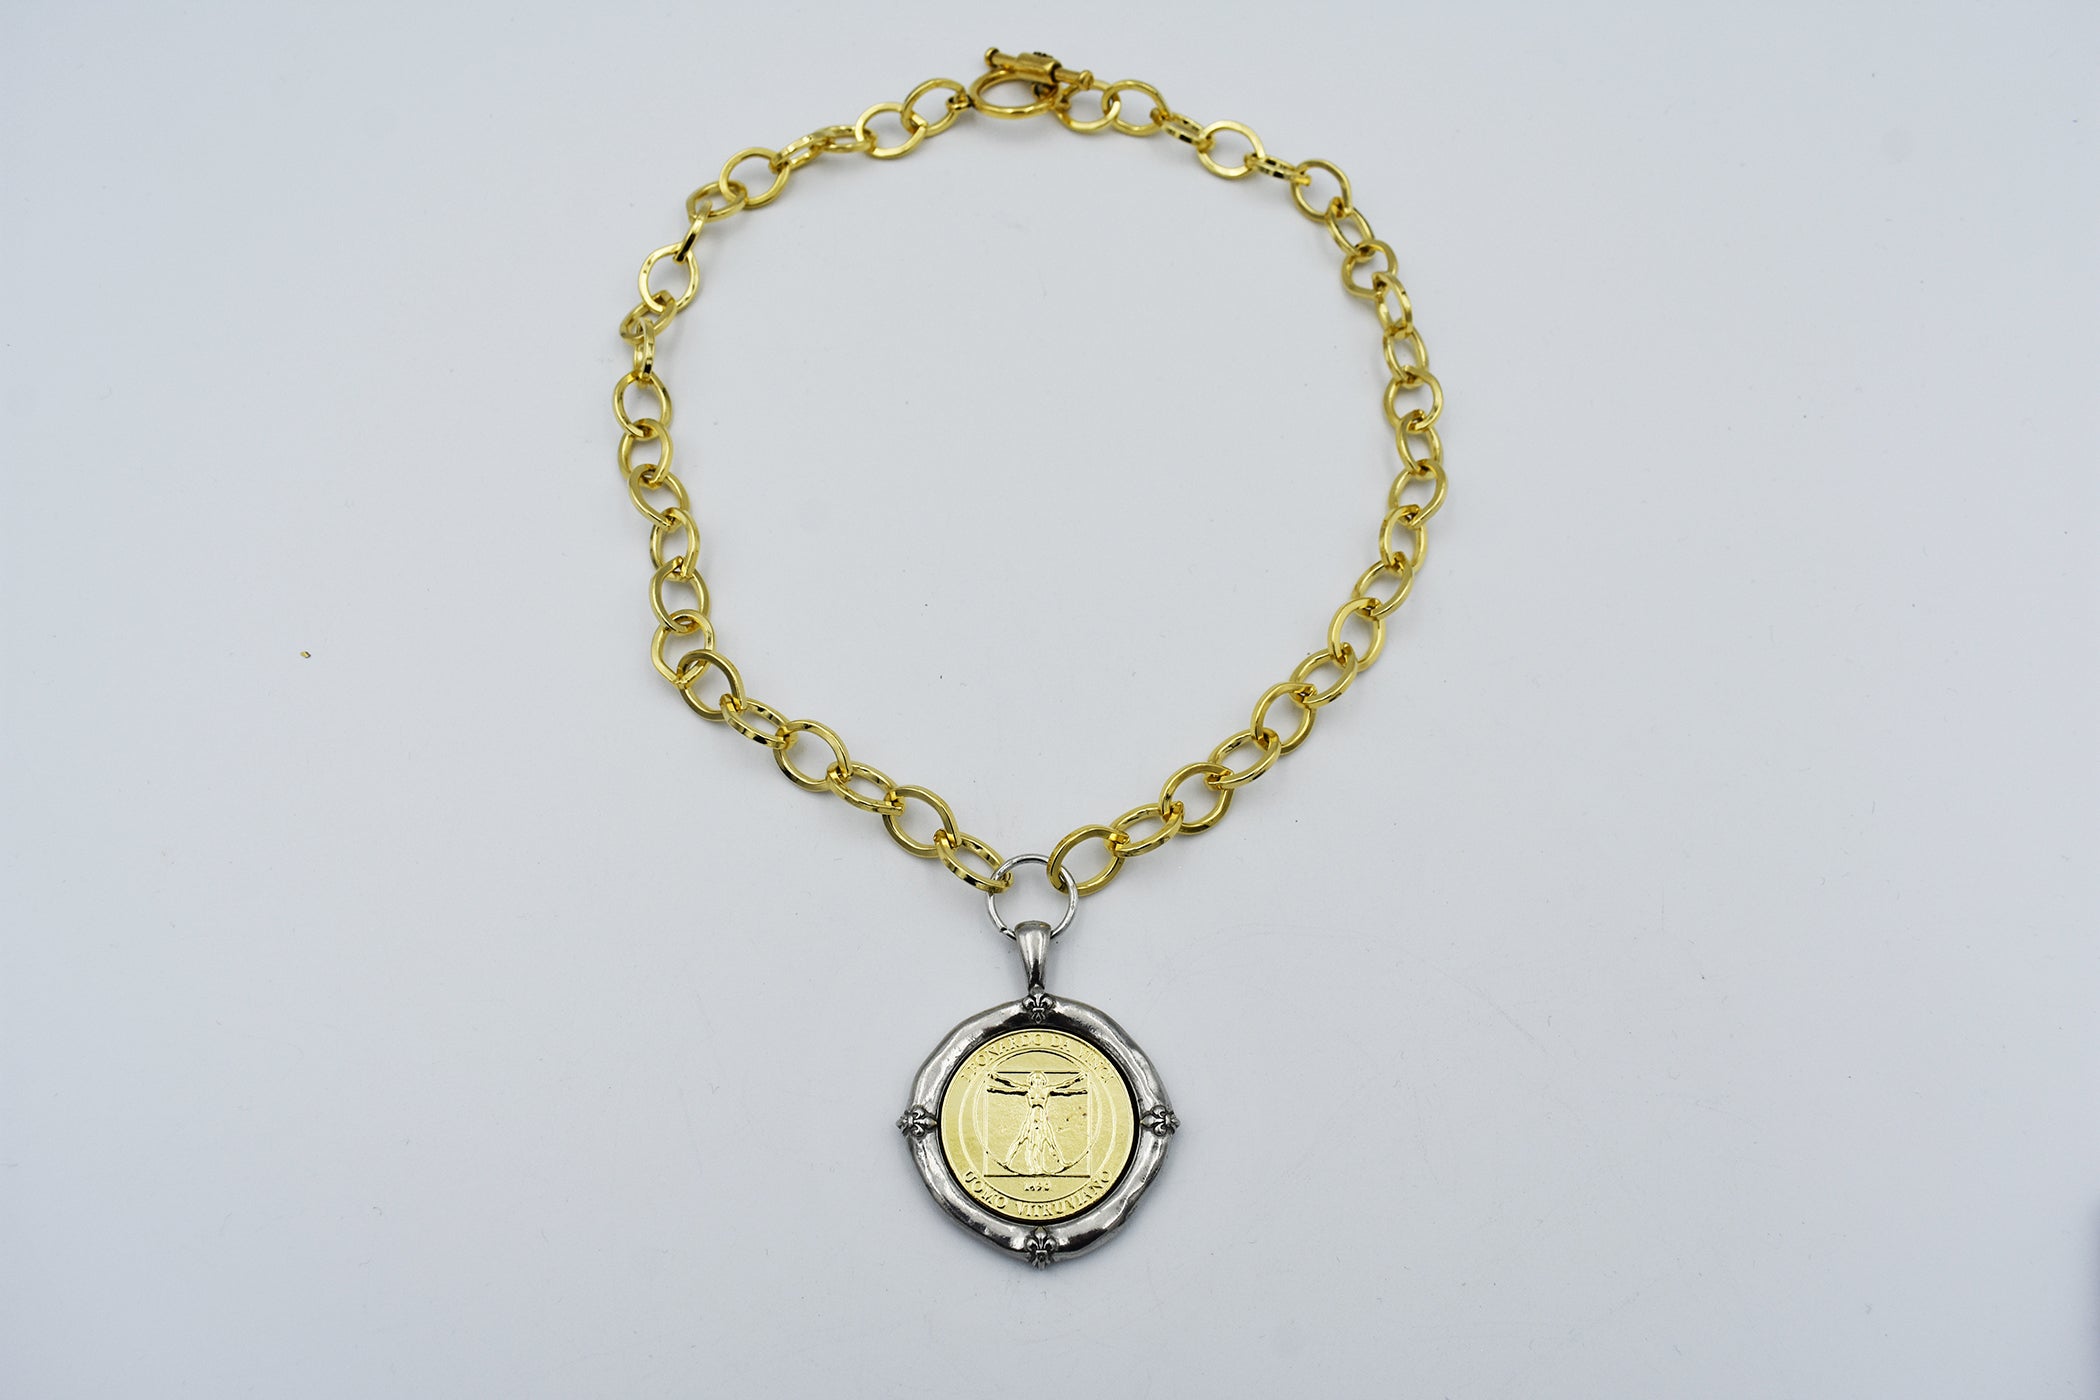 Italian Treasures Collection Gold Chain Necklace with Leonardo Da Vinci